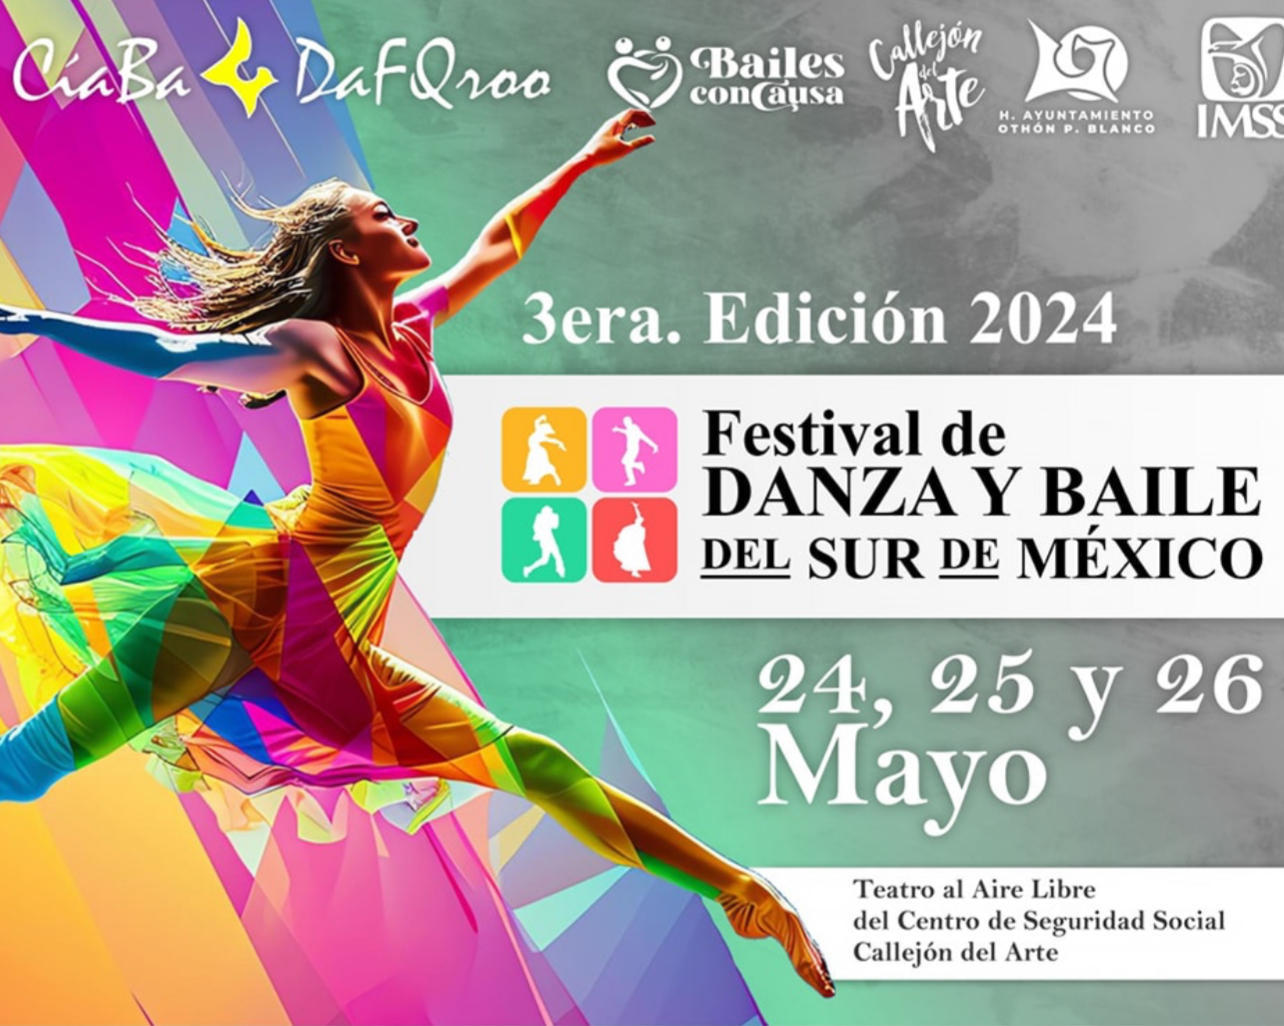 Festival de Danza y Baile del Sur de México image